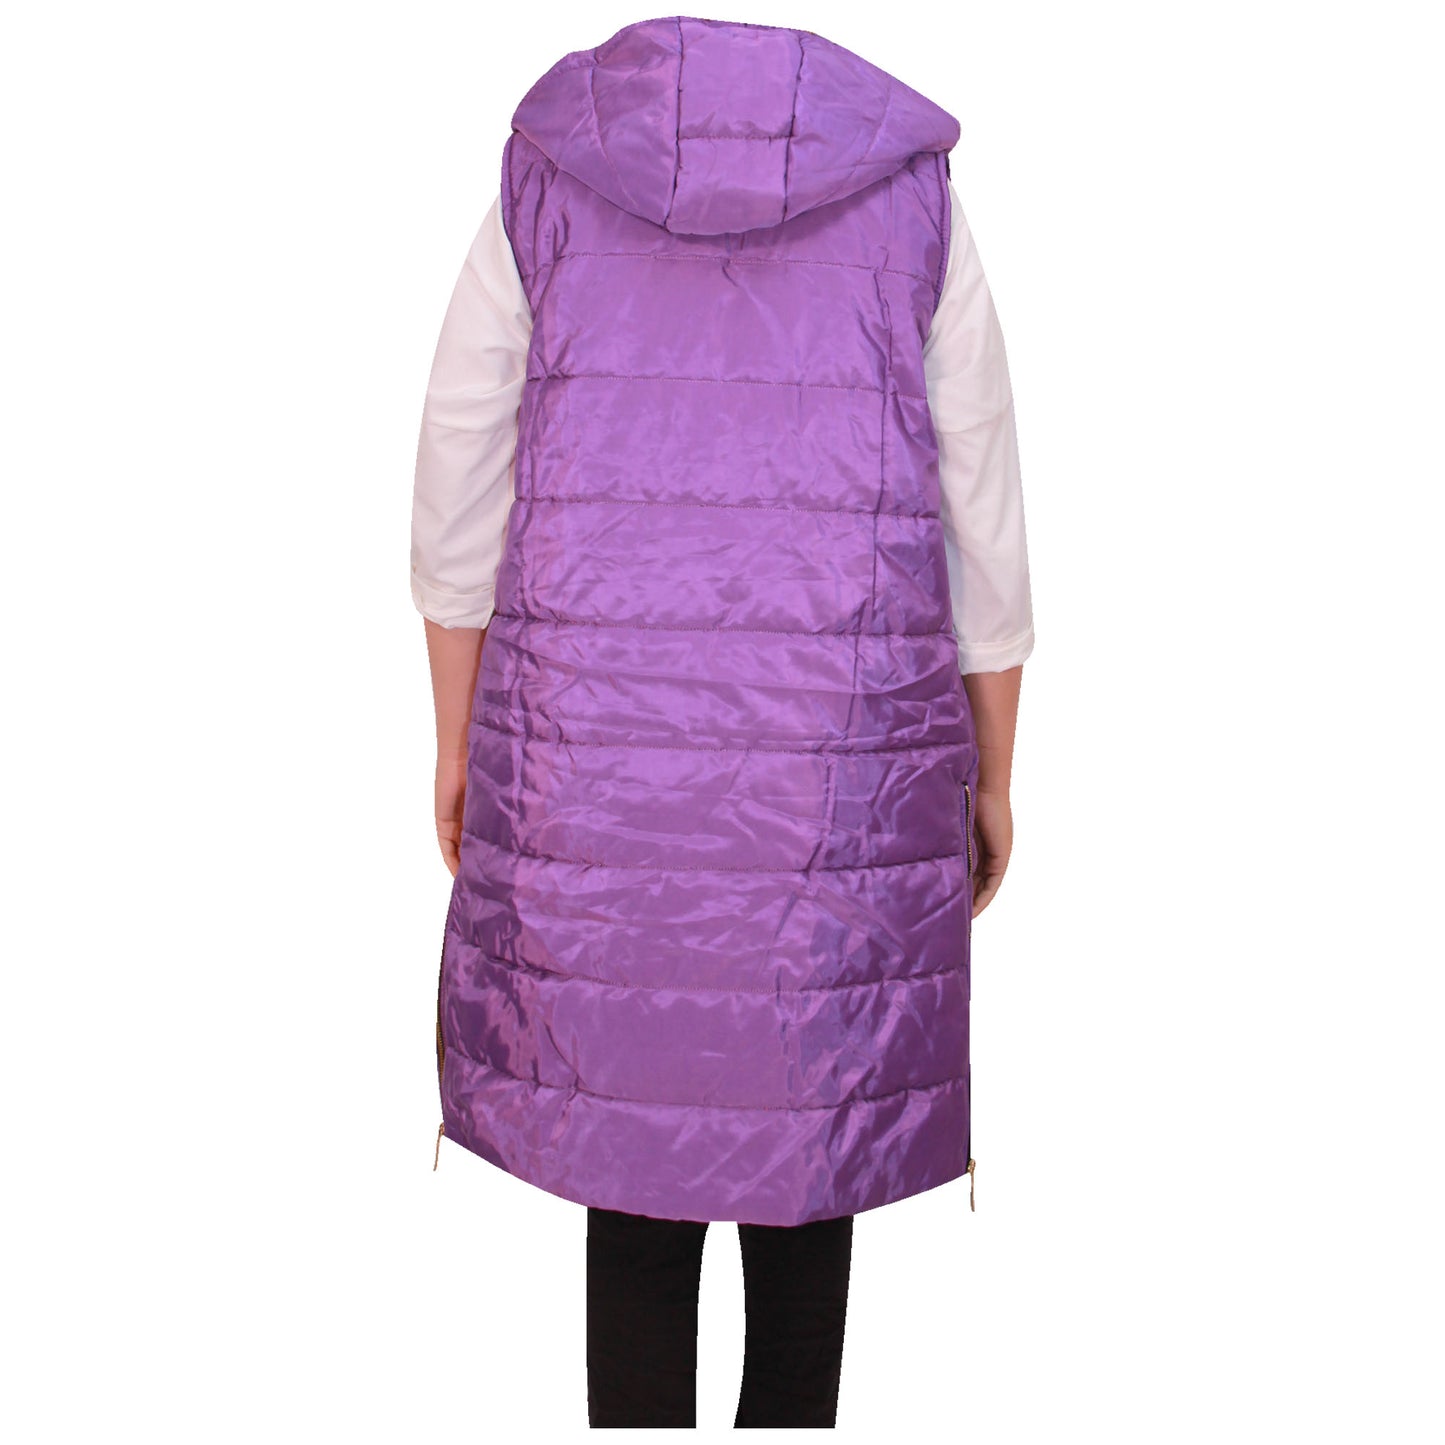 Ladies Jacket Long Gilet Women Body Warmer Hooded Long Length Rain Proof Shower Proof